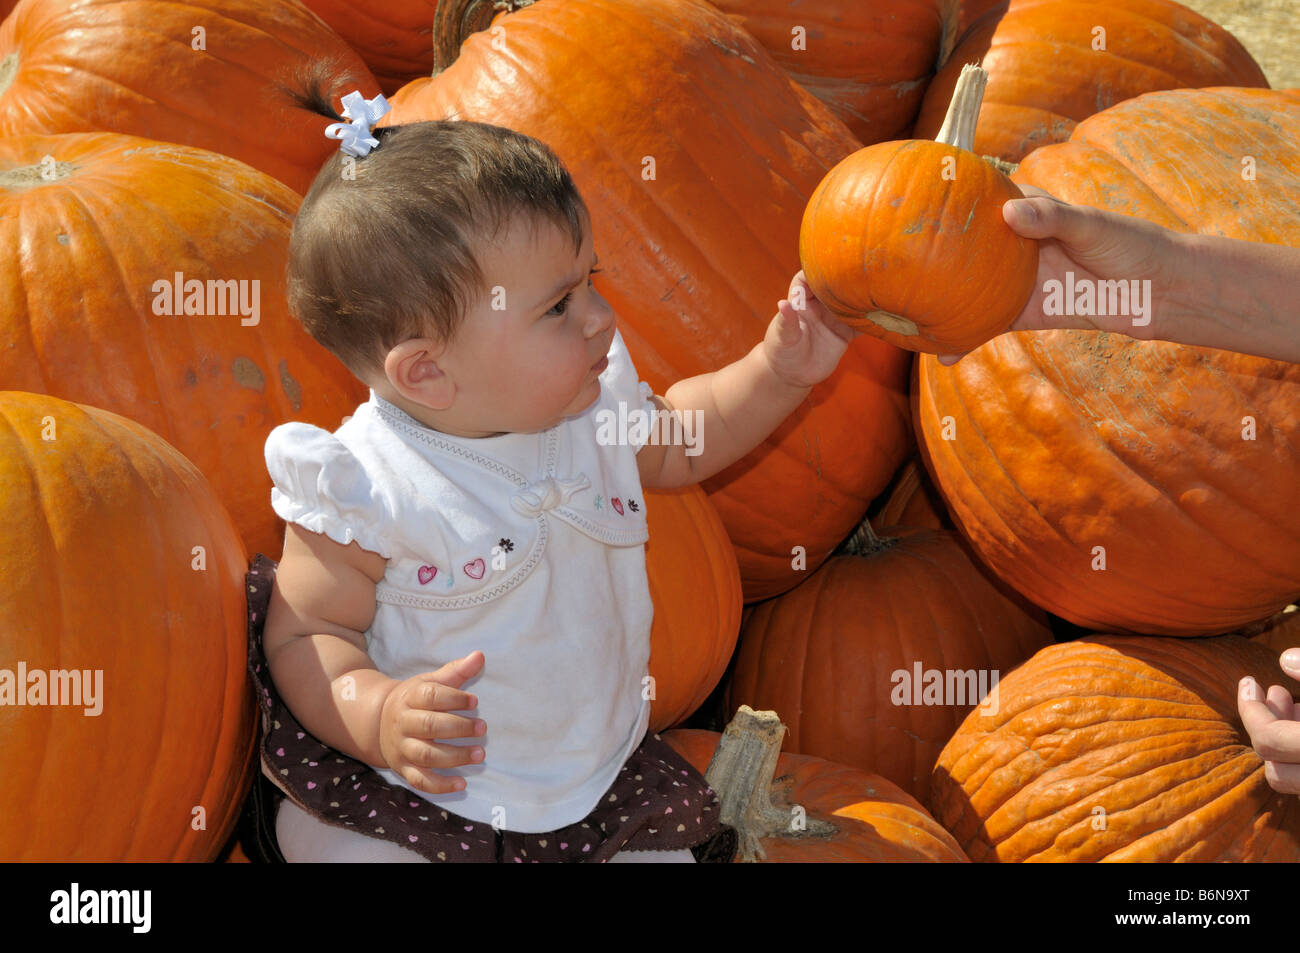 Invece arriva belle piccole zucca al baby ragazza seduta tra grandi zucche arancione Foto Stock